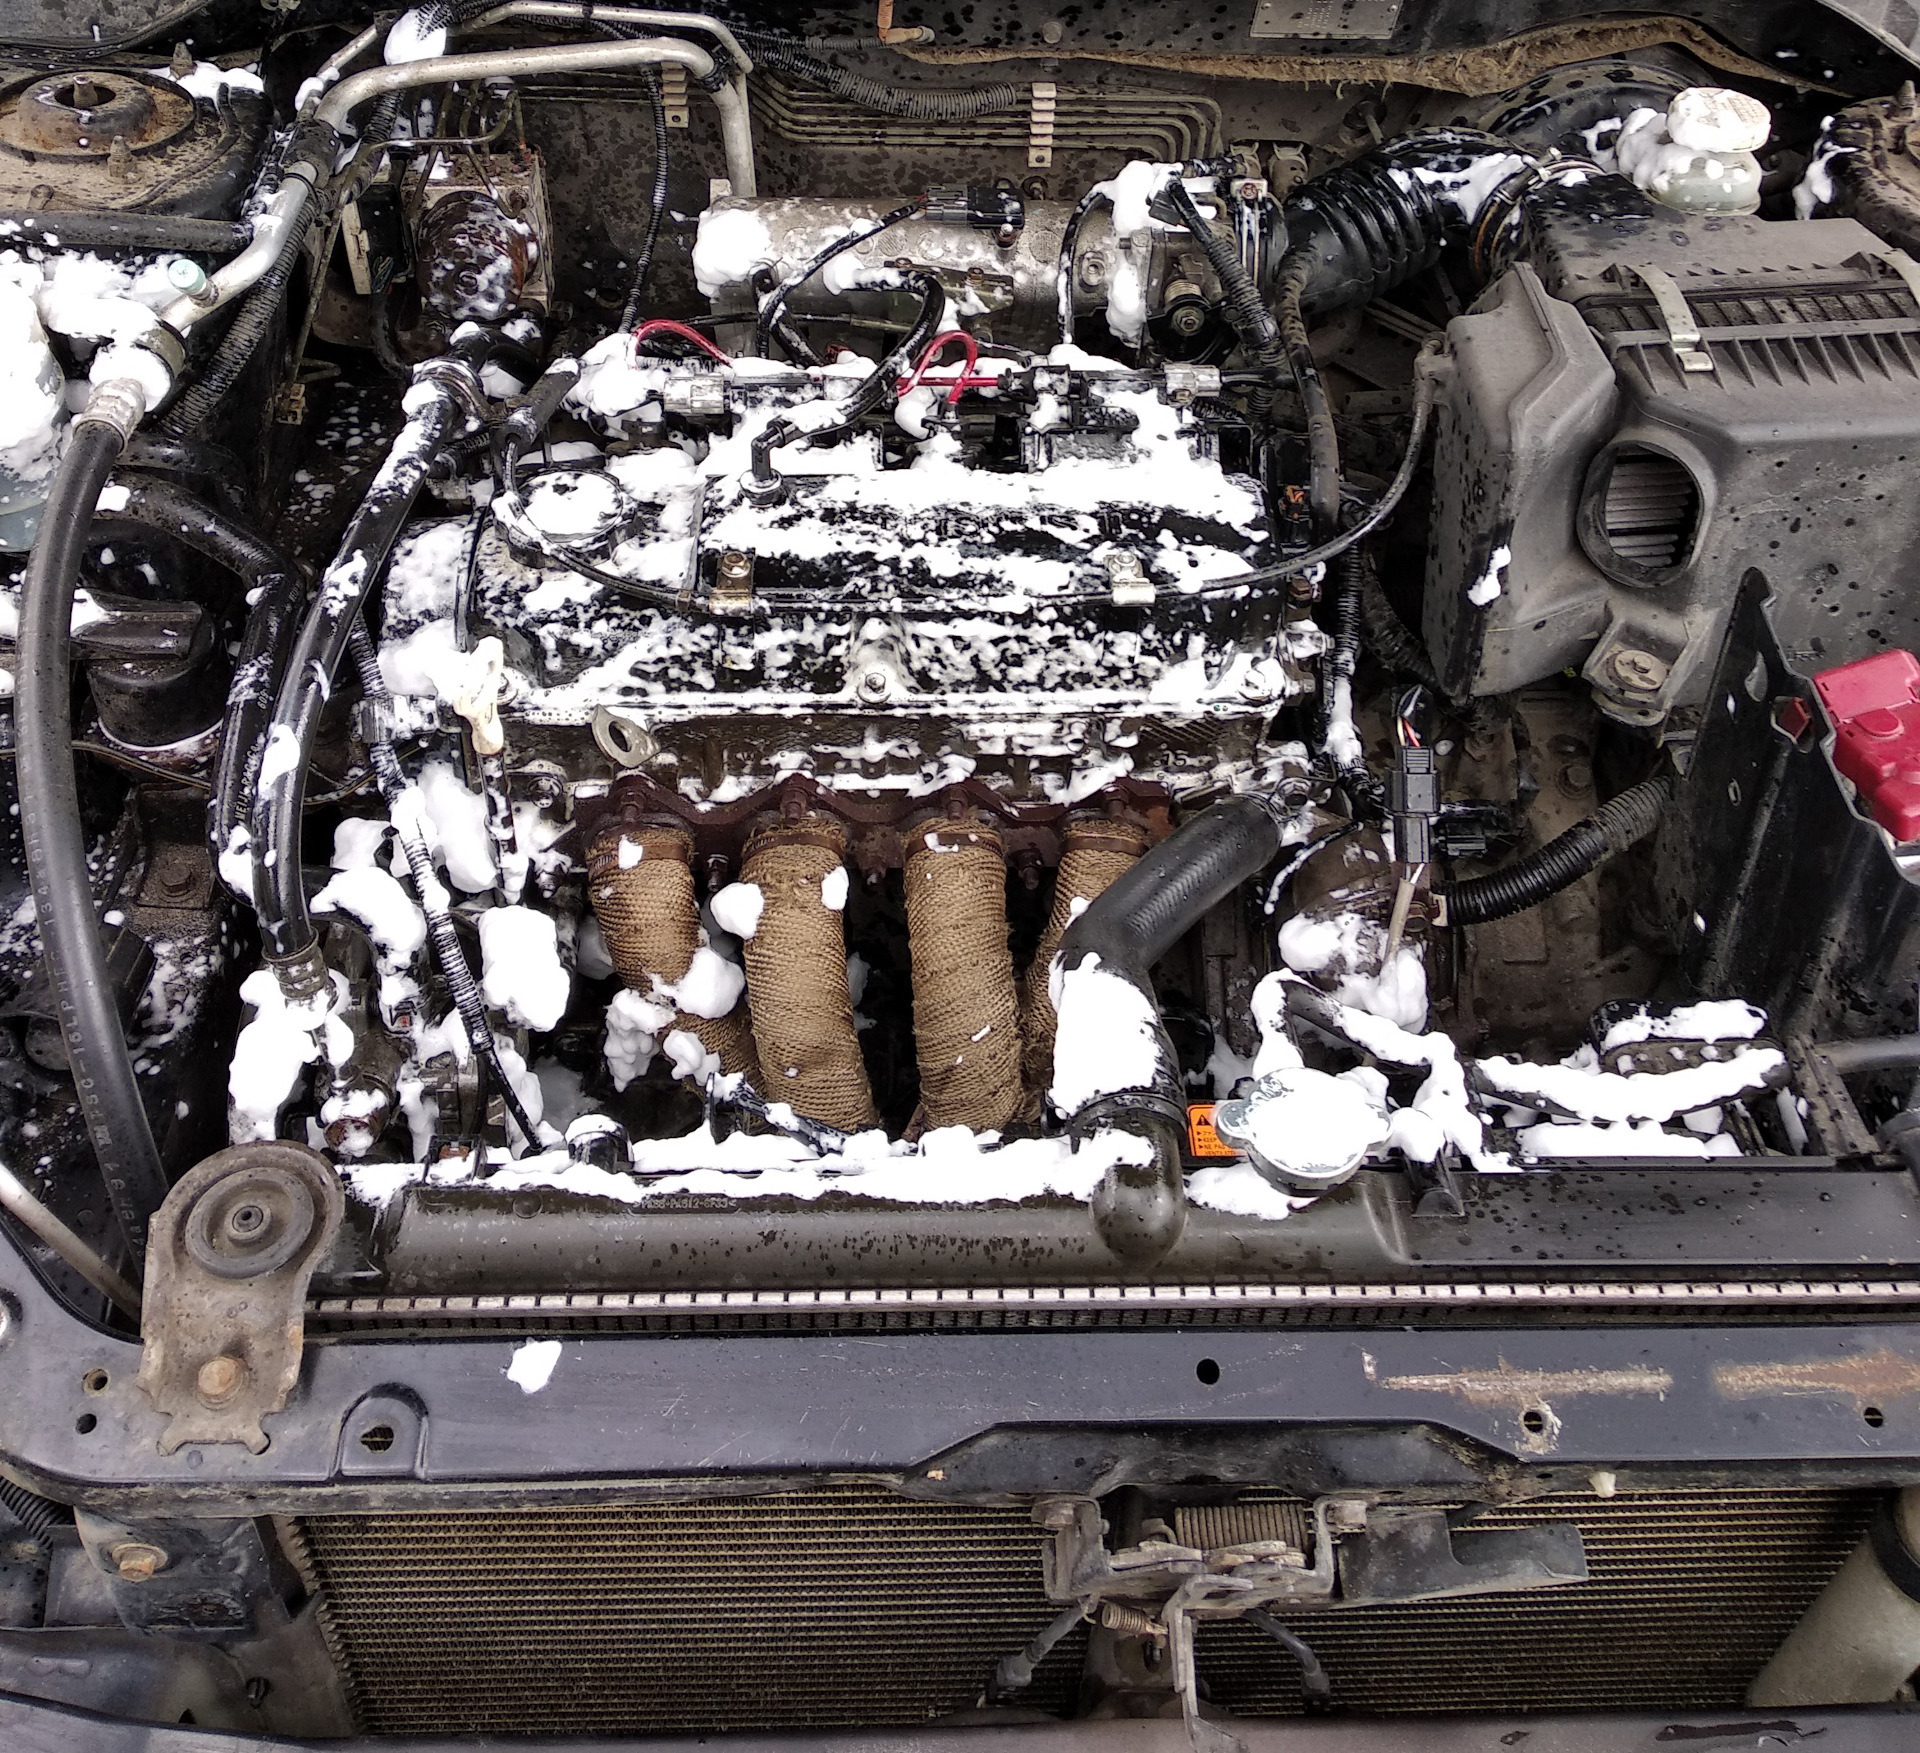 Сильно греется двигатель. Плита двигателя - Mitsubishi Lancer, 1.6 л., 2006 года. Двигатель нагрелся. Мойка двигателя драйв 2. Охлаждение двигателя Мицубиси Лансер 9.